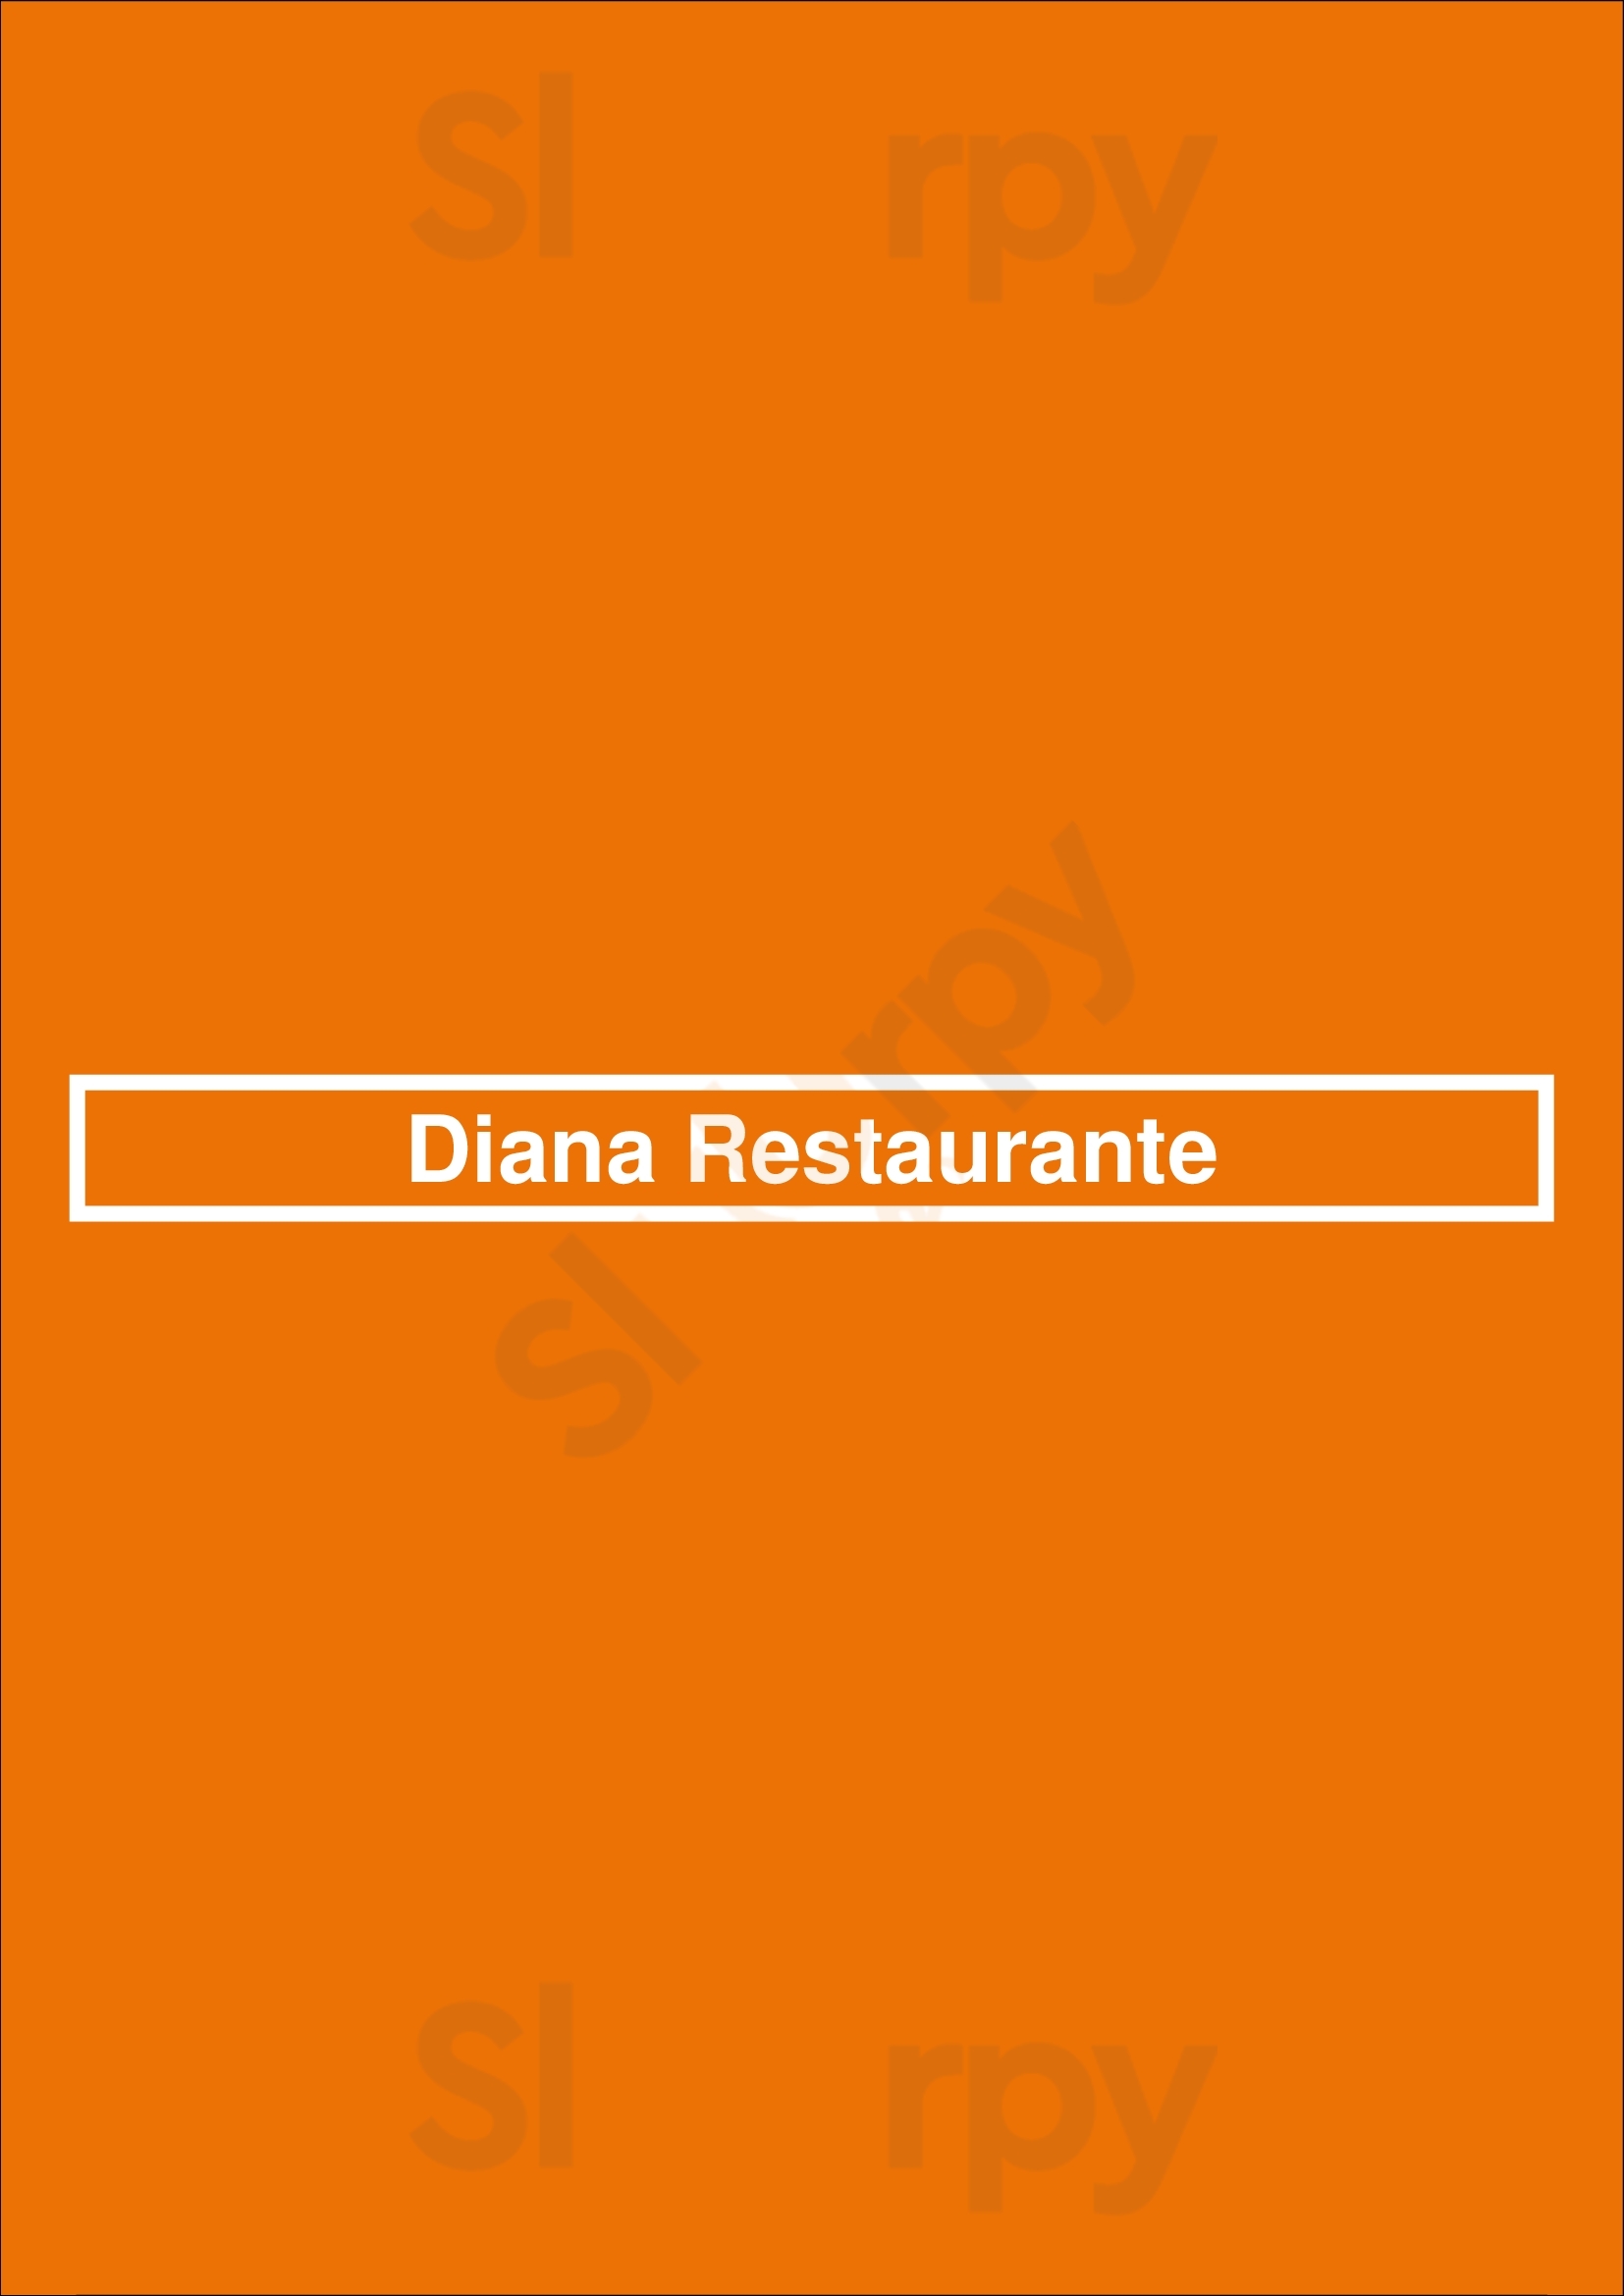 Diana Restaurante Braga Menu - 1